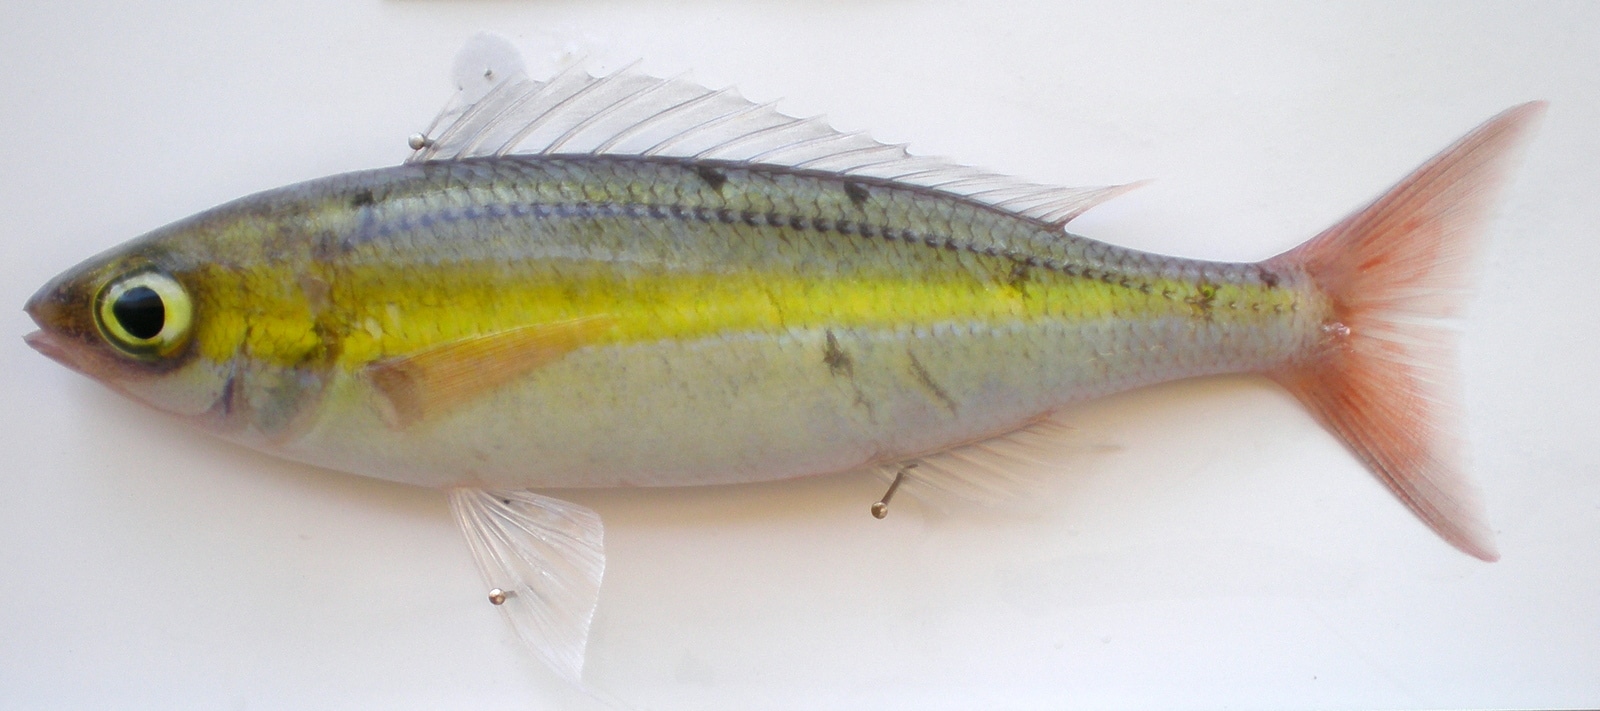 Yellowfin Whiptail